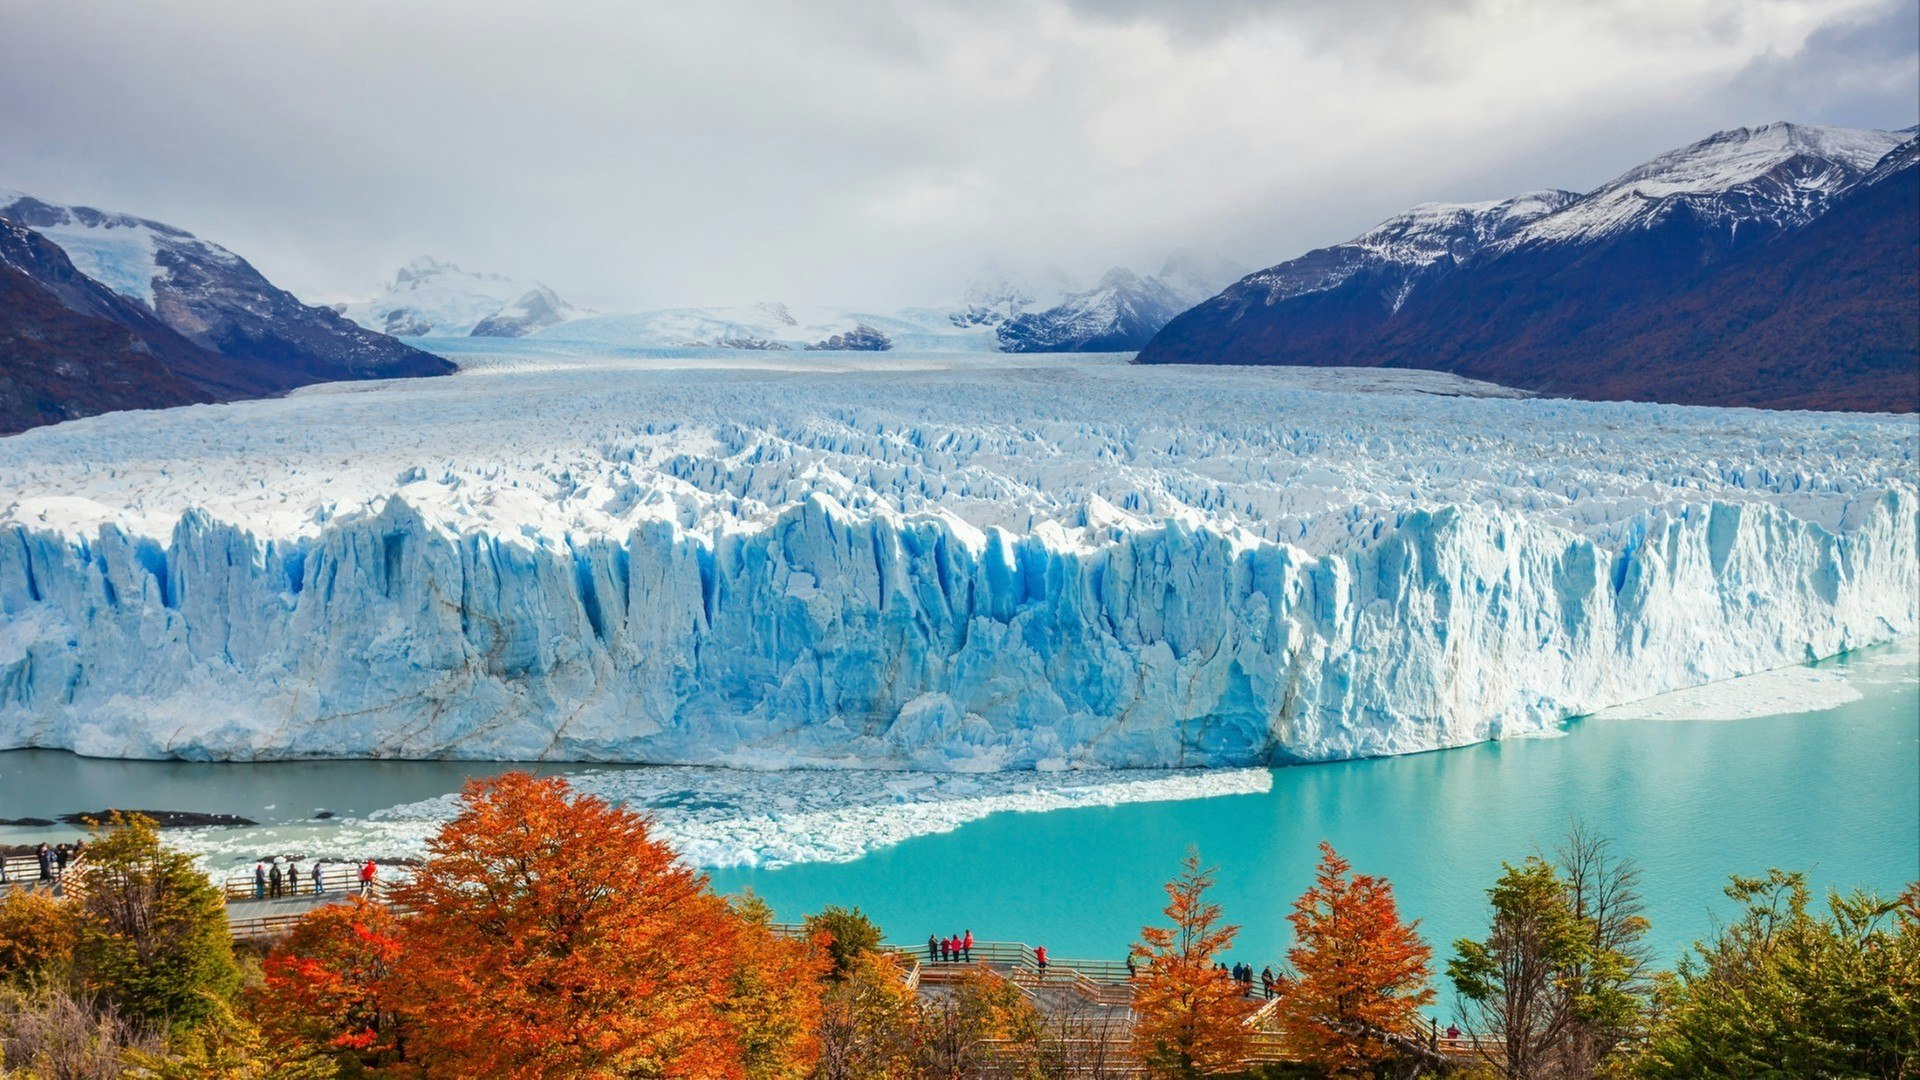 The Perito Moreno Glacier is a glacier located in the Los Glaciares National Park in Santa Cruz Province